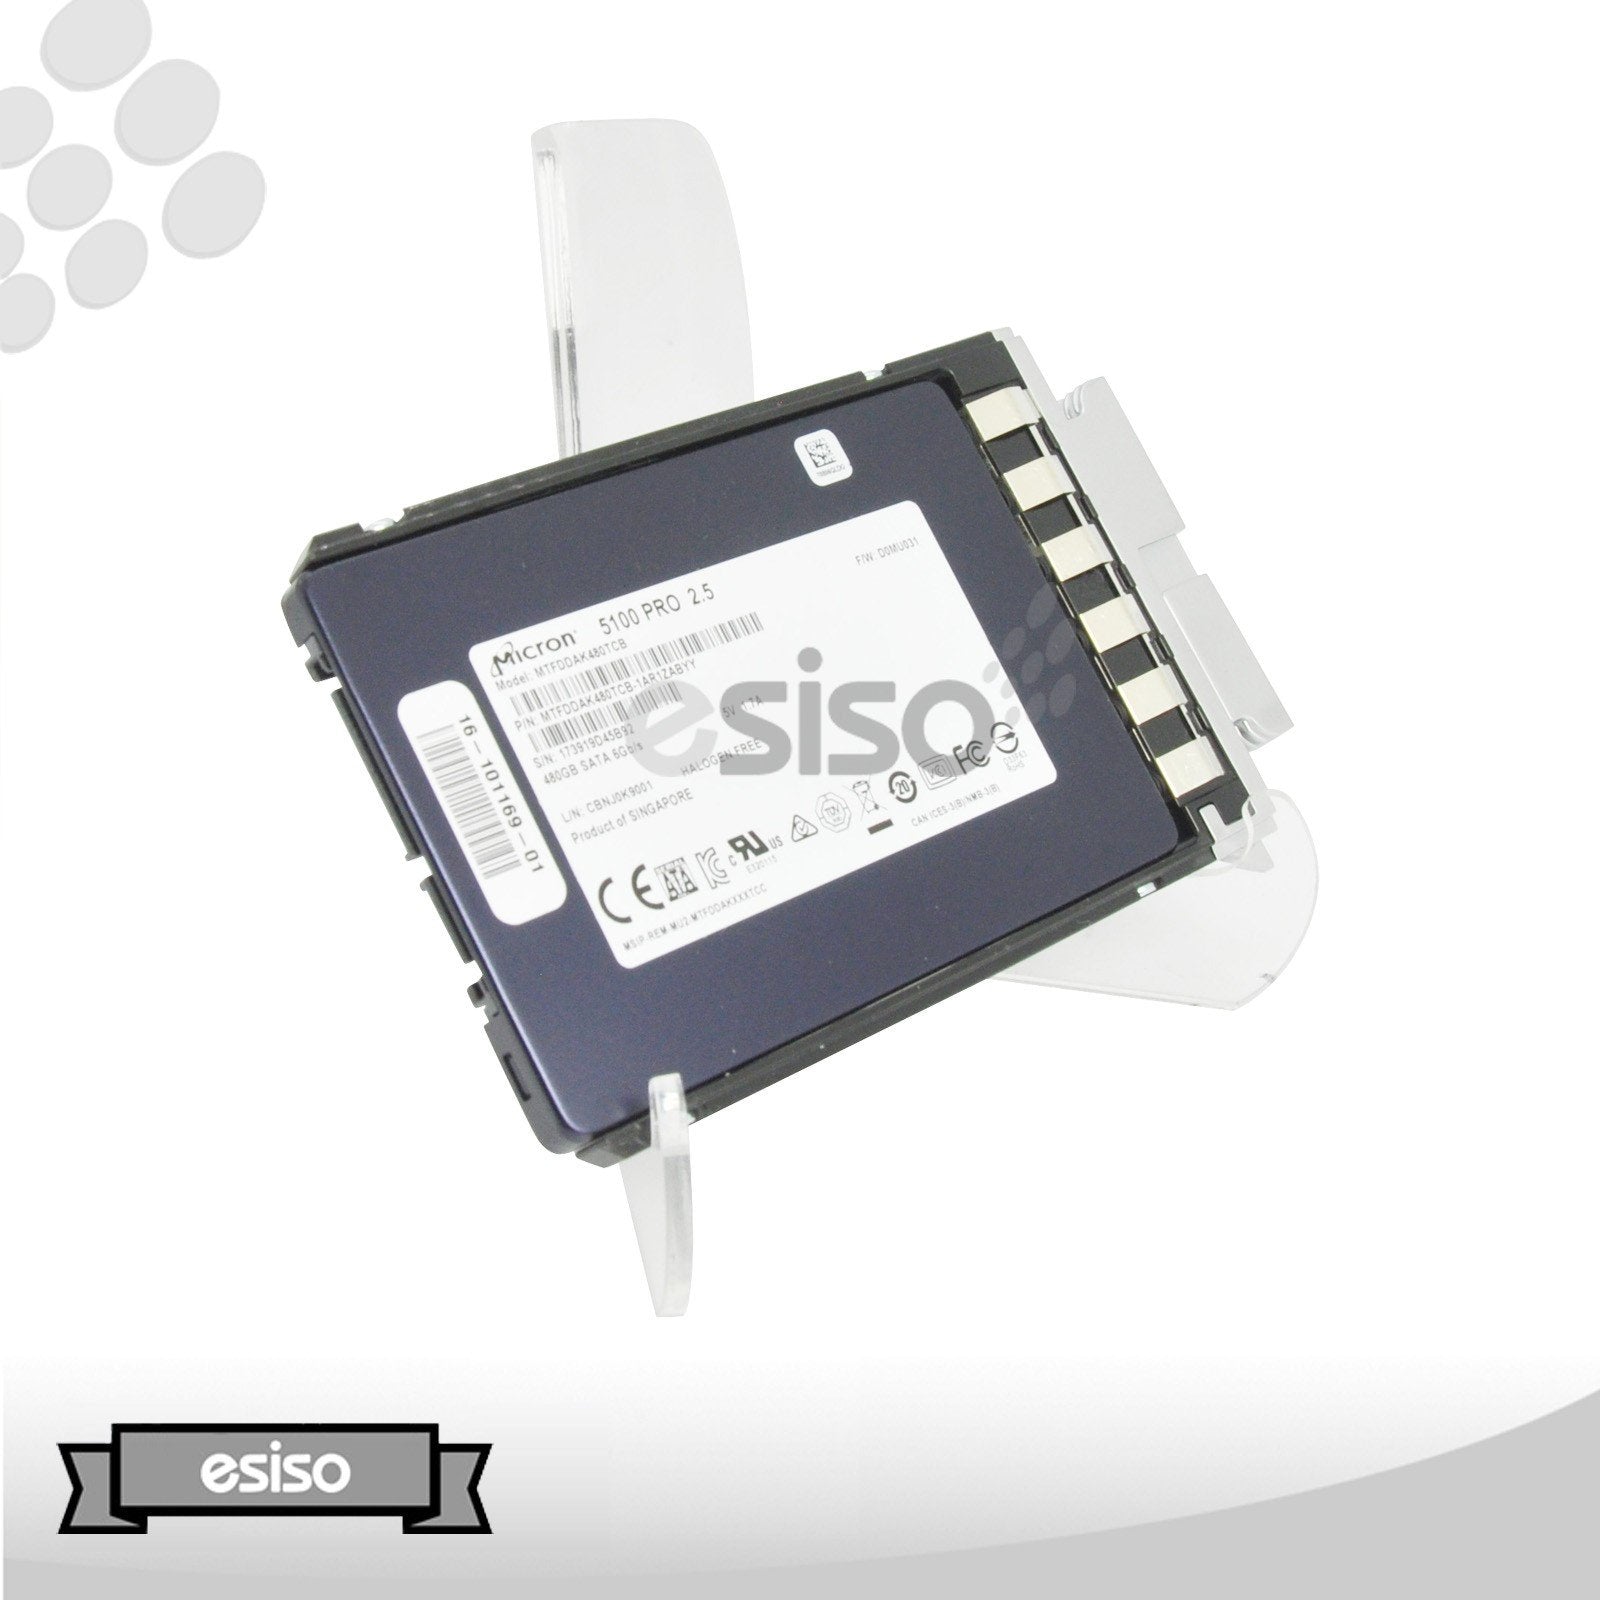 USC-S3260-G3SD48 MTFDDAK480TCB CISCO 480GB 6G SFF 2.5" SATA TLC UCS S3260 SSD